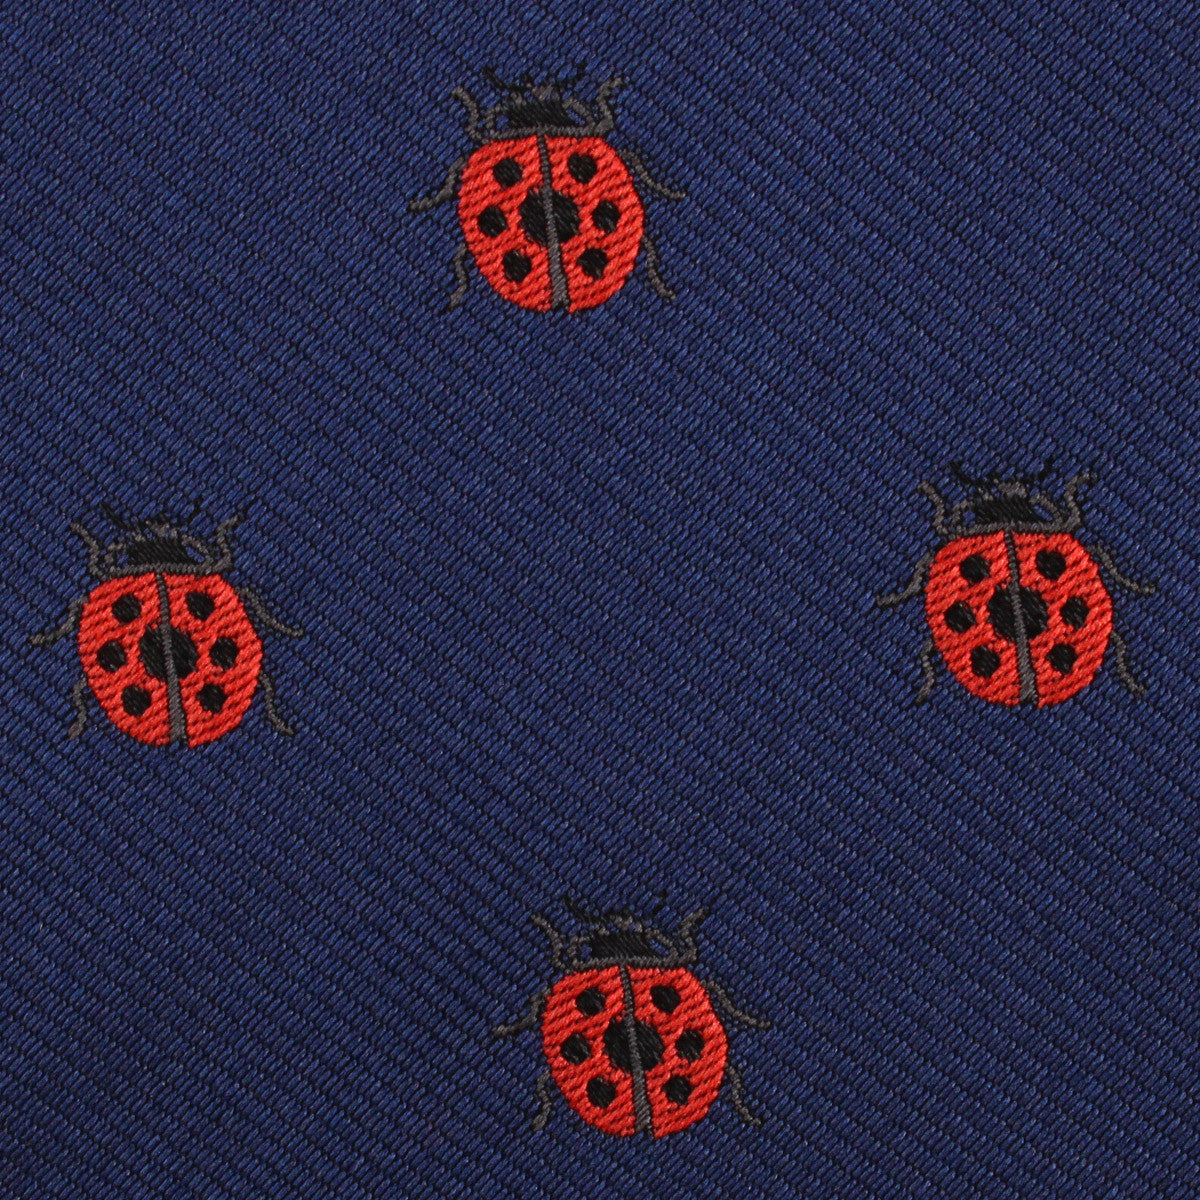 Ladybird Beetle Fabric Necktie